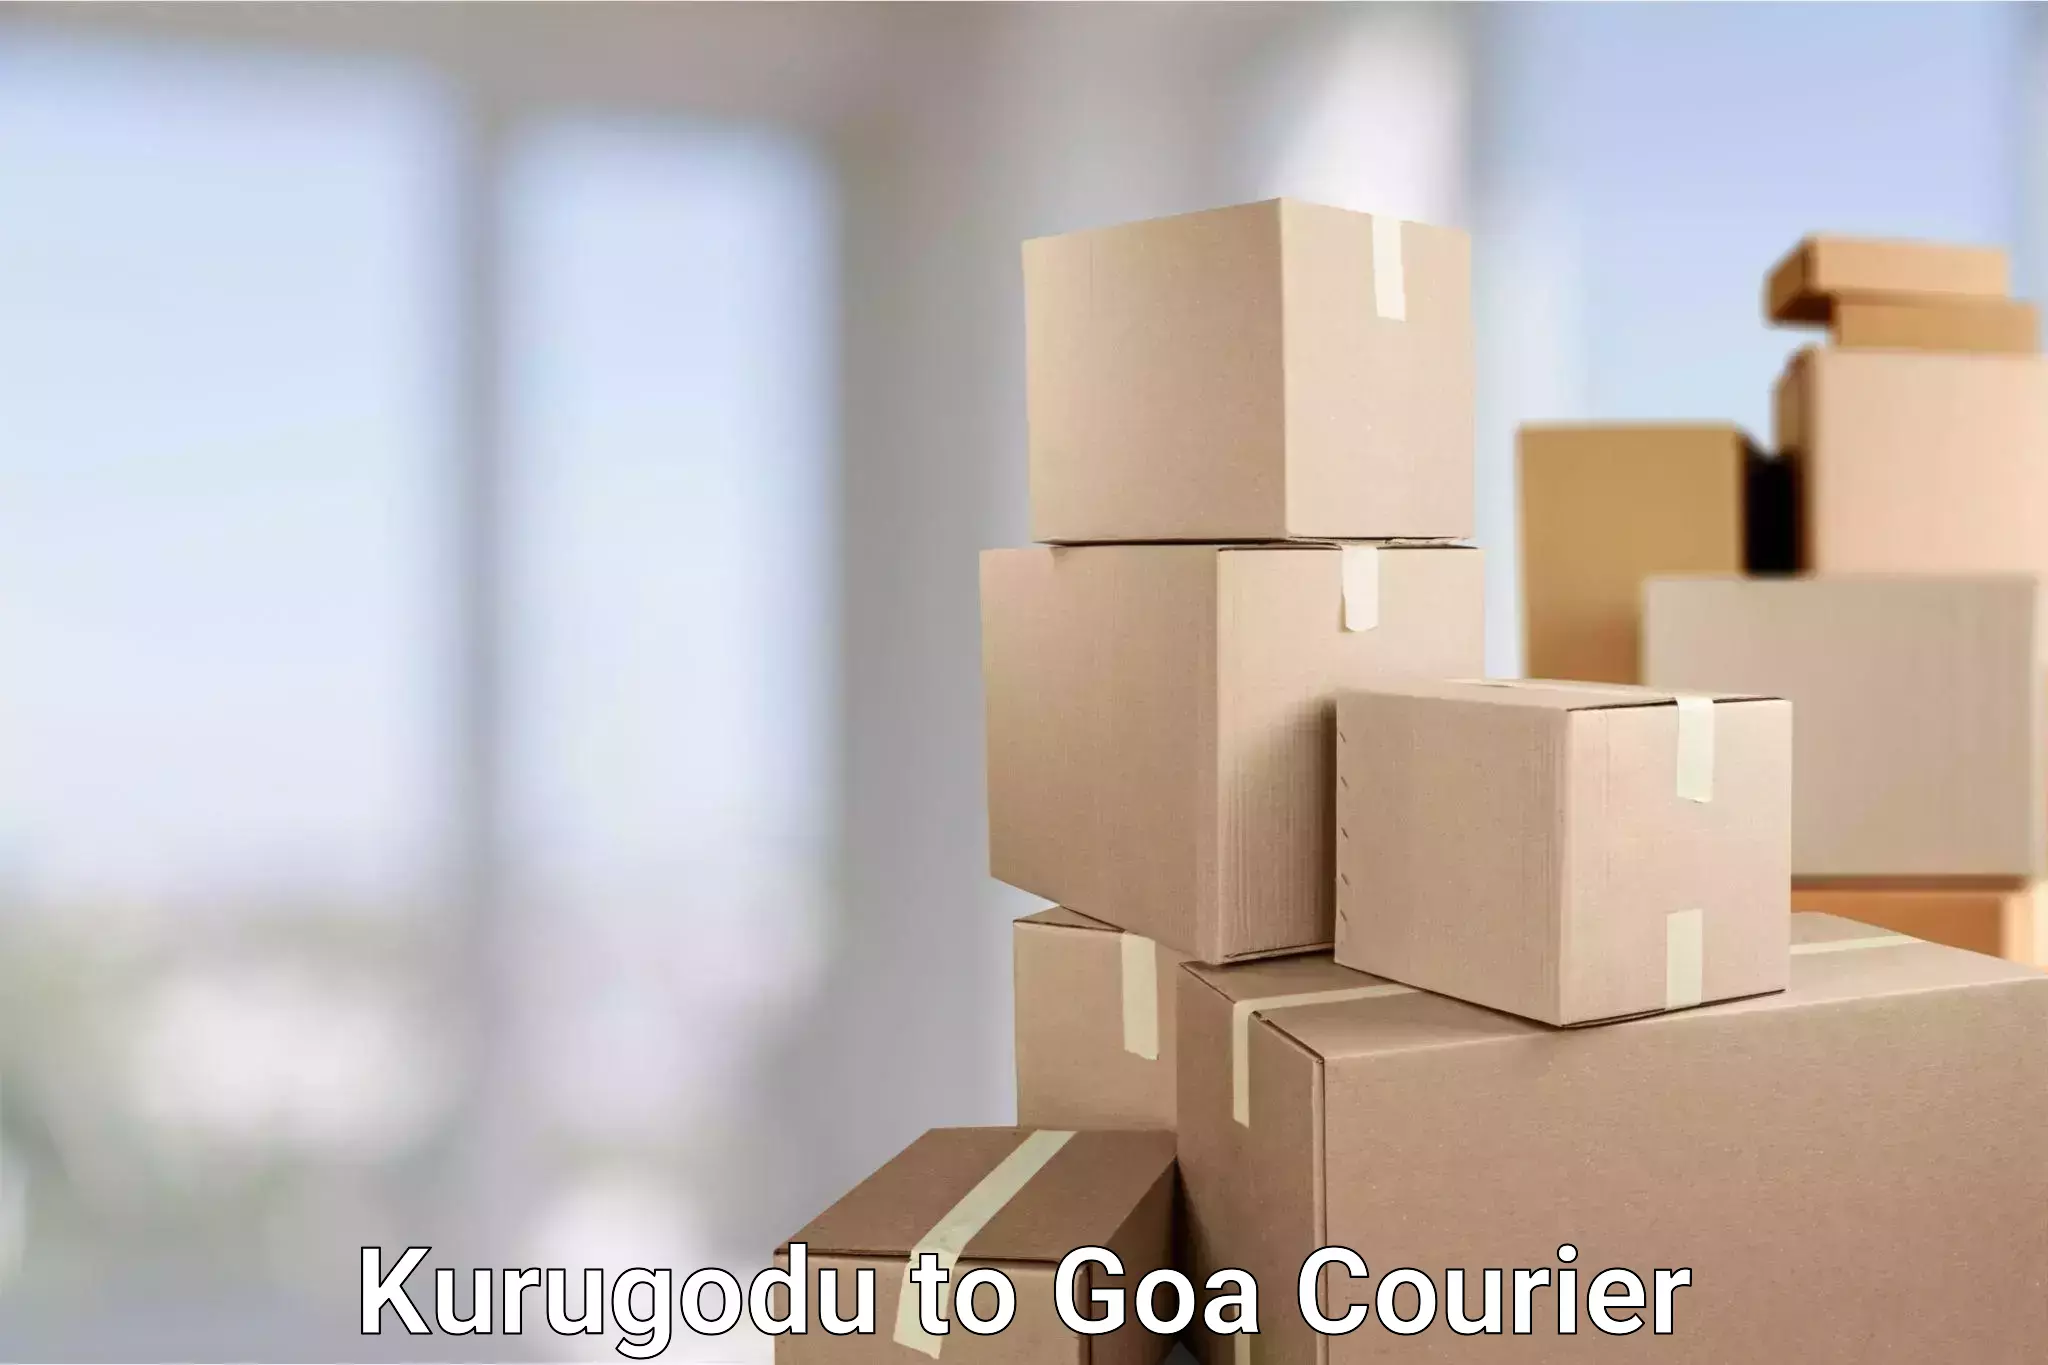 Tech-enabled shipping Kurugodu to South Goa